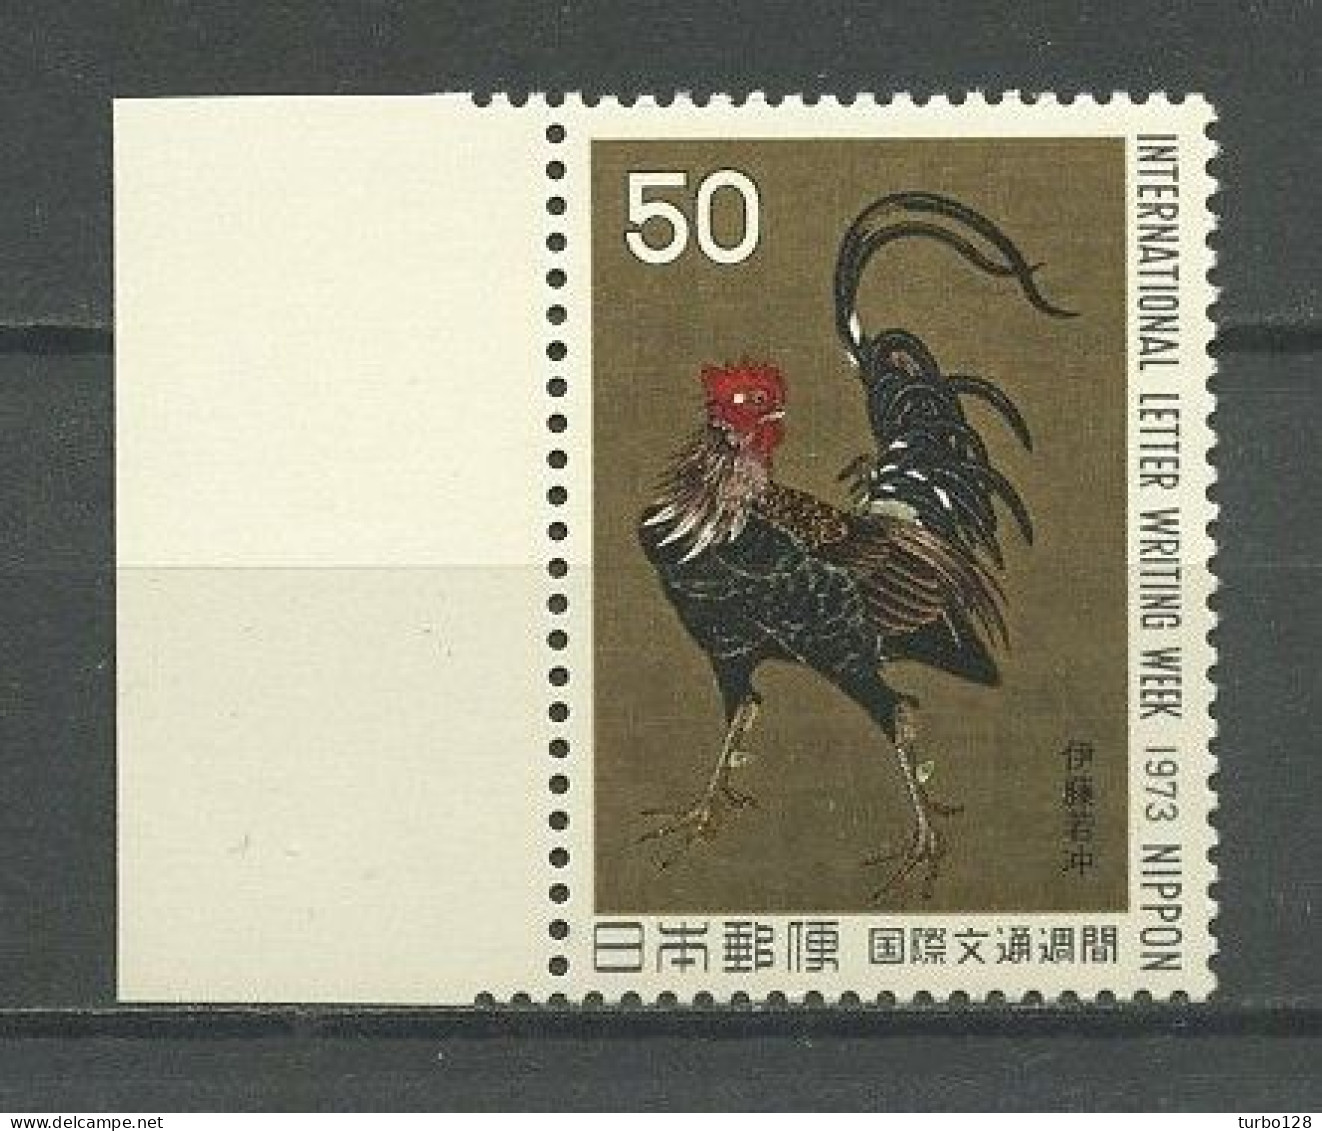 JAPON 1973 N° 1091 ** Neuf MNH Superbe C 1,25 € Faune Oiseaux Coq Guerrier De J. Ito La Lettre Peintures Birds Painting - Neufs